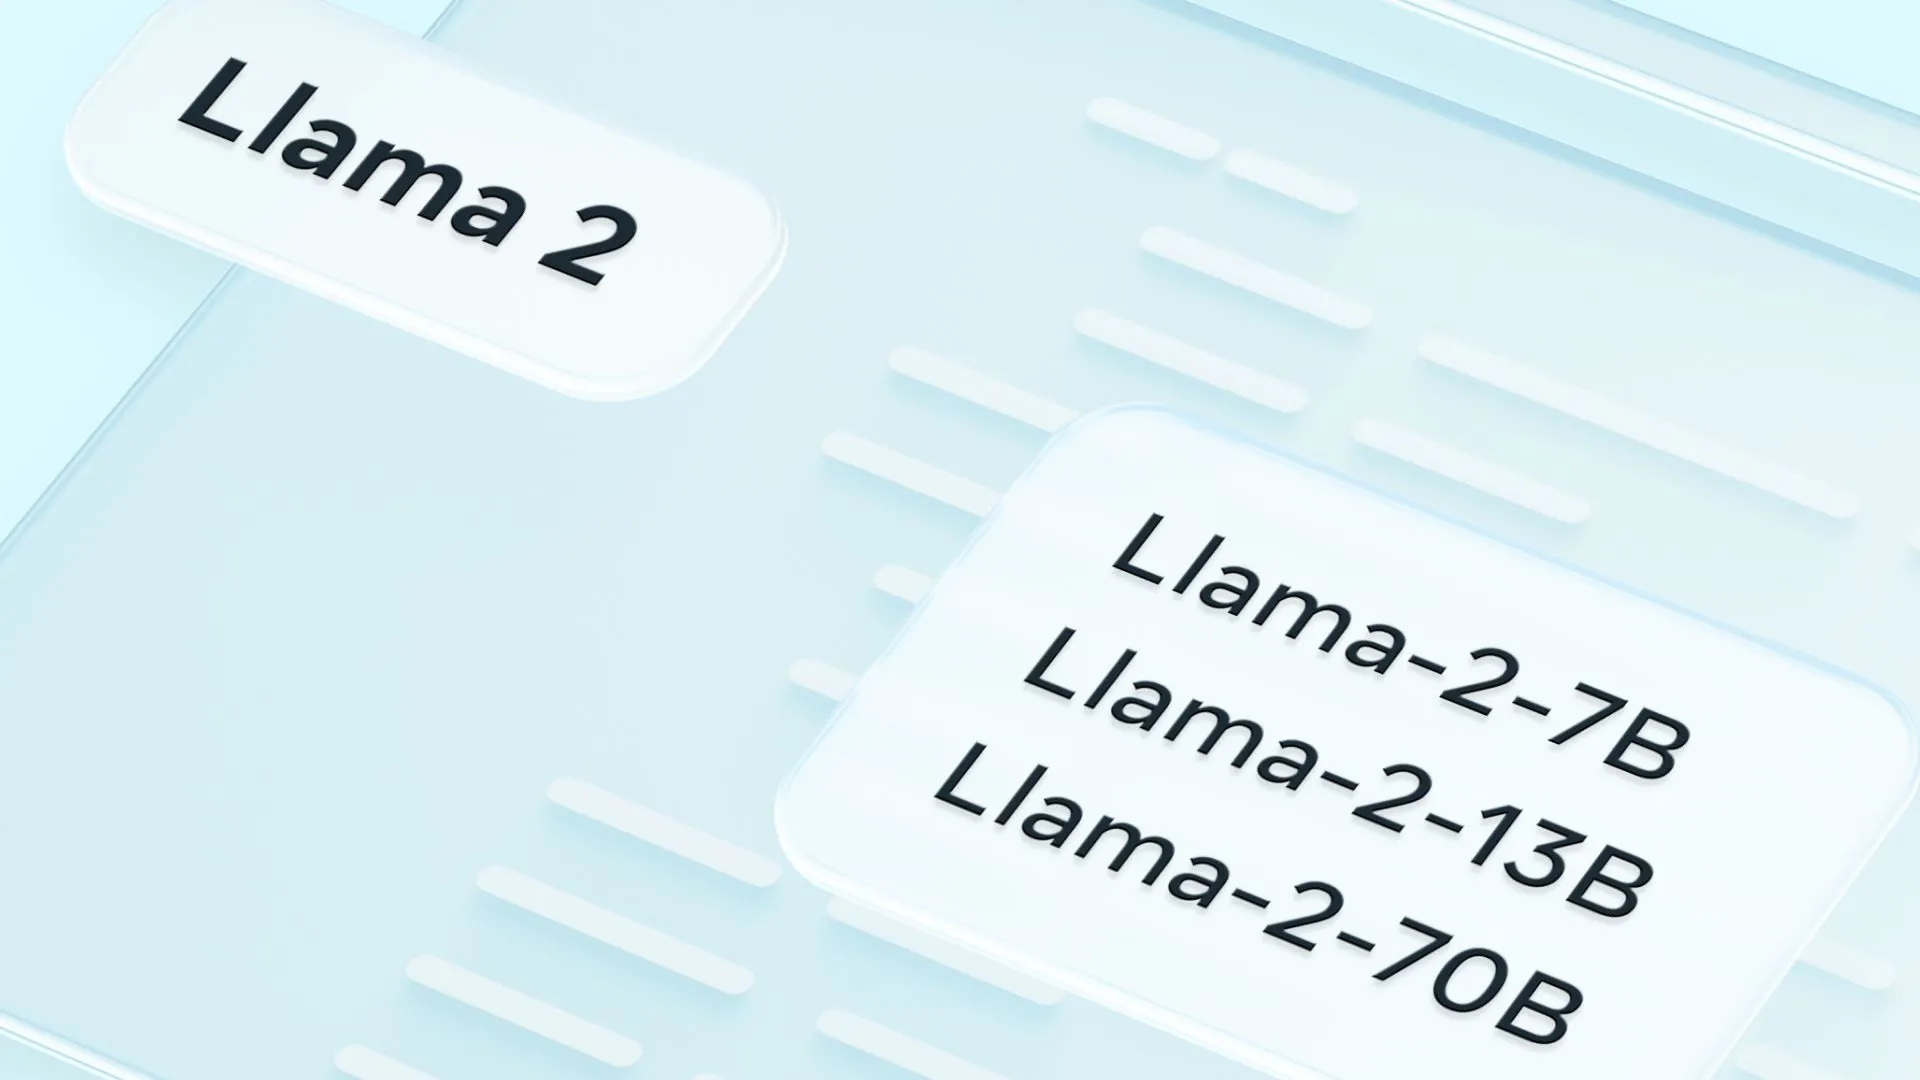 MetaとMicrosoftが提携し、新たな大規模言語モデル「Llama 2」をリリース